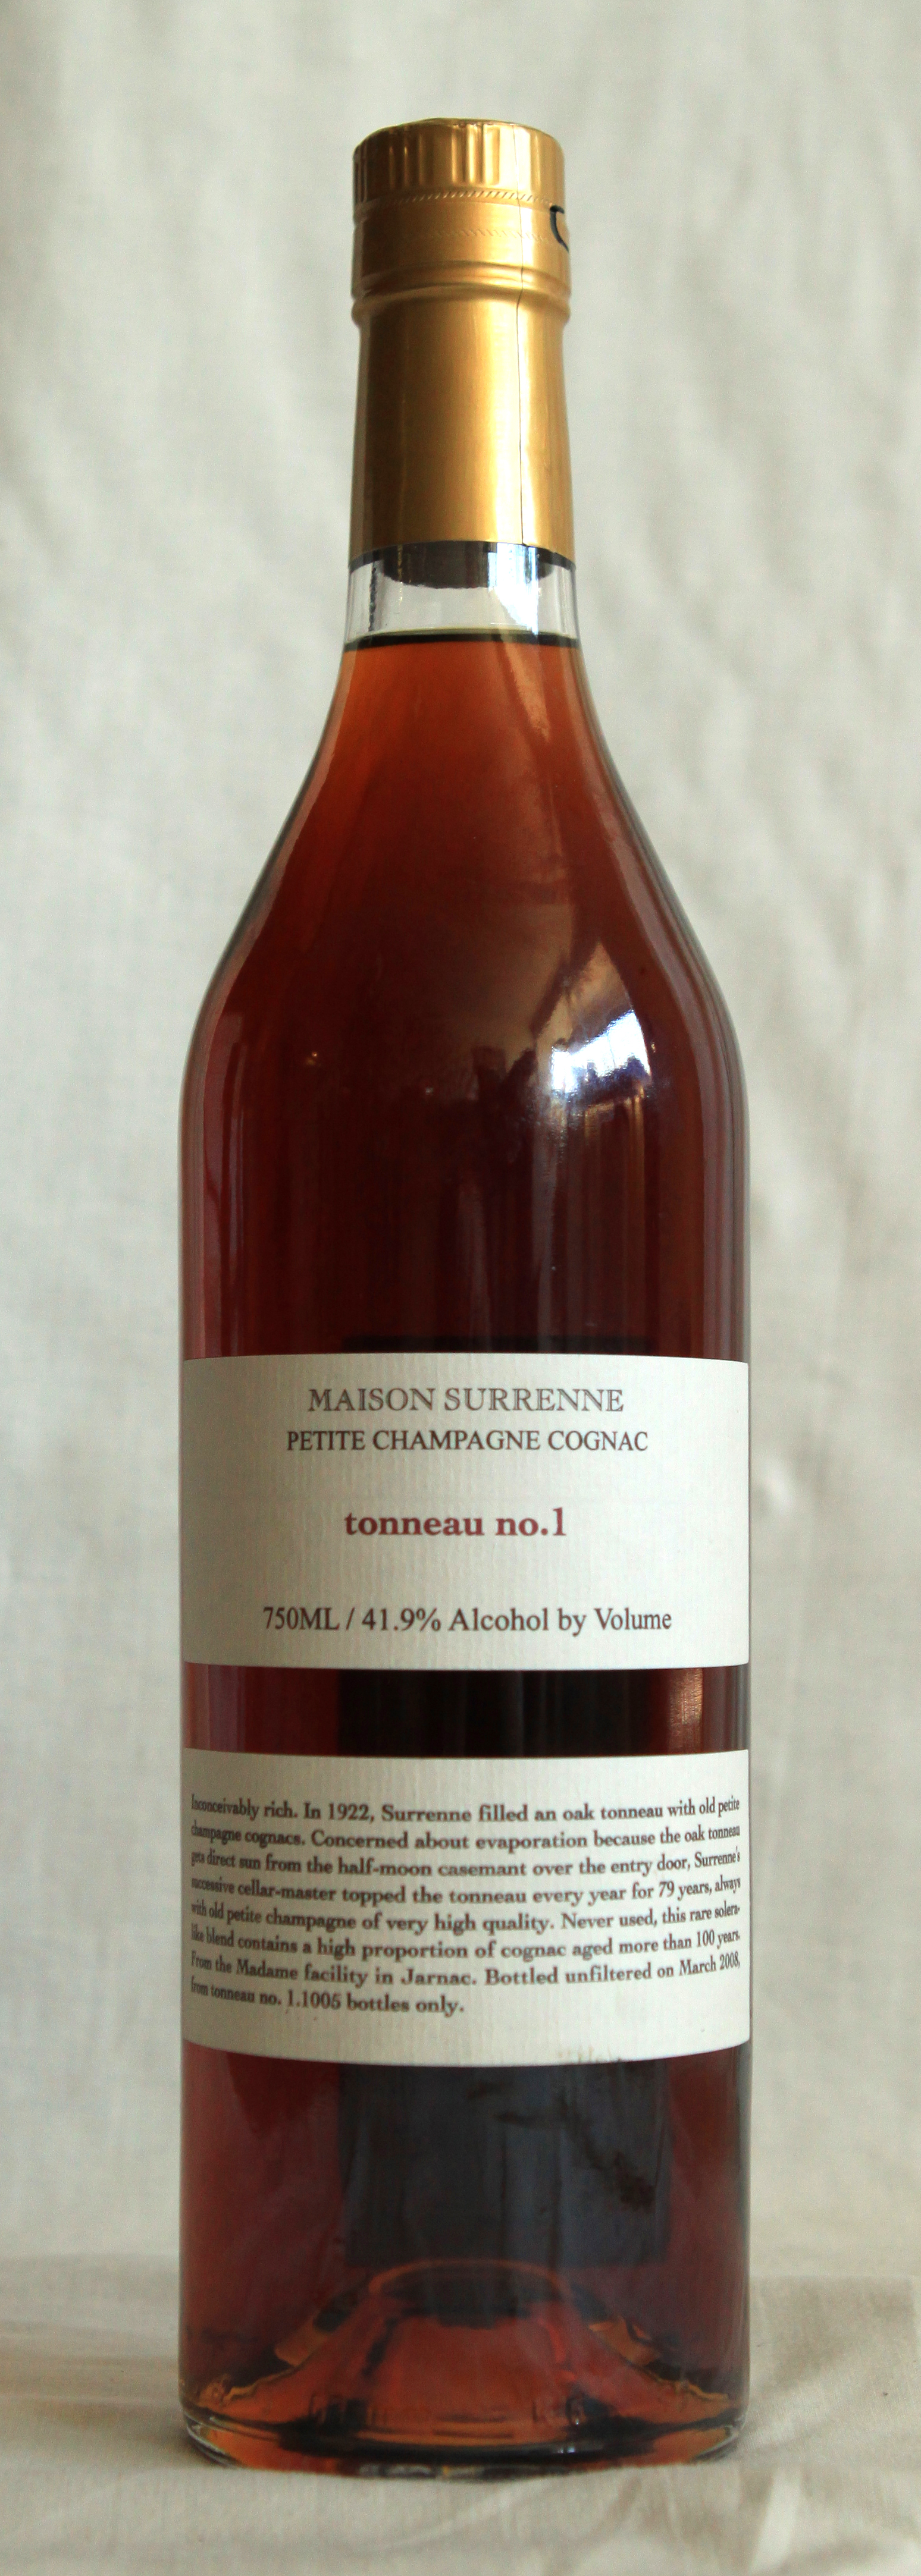 Maison Surrenne info - Craft Distillers